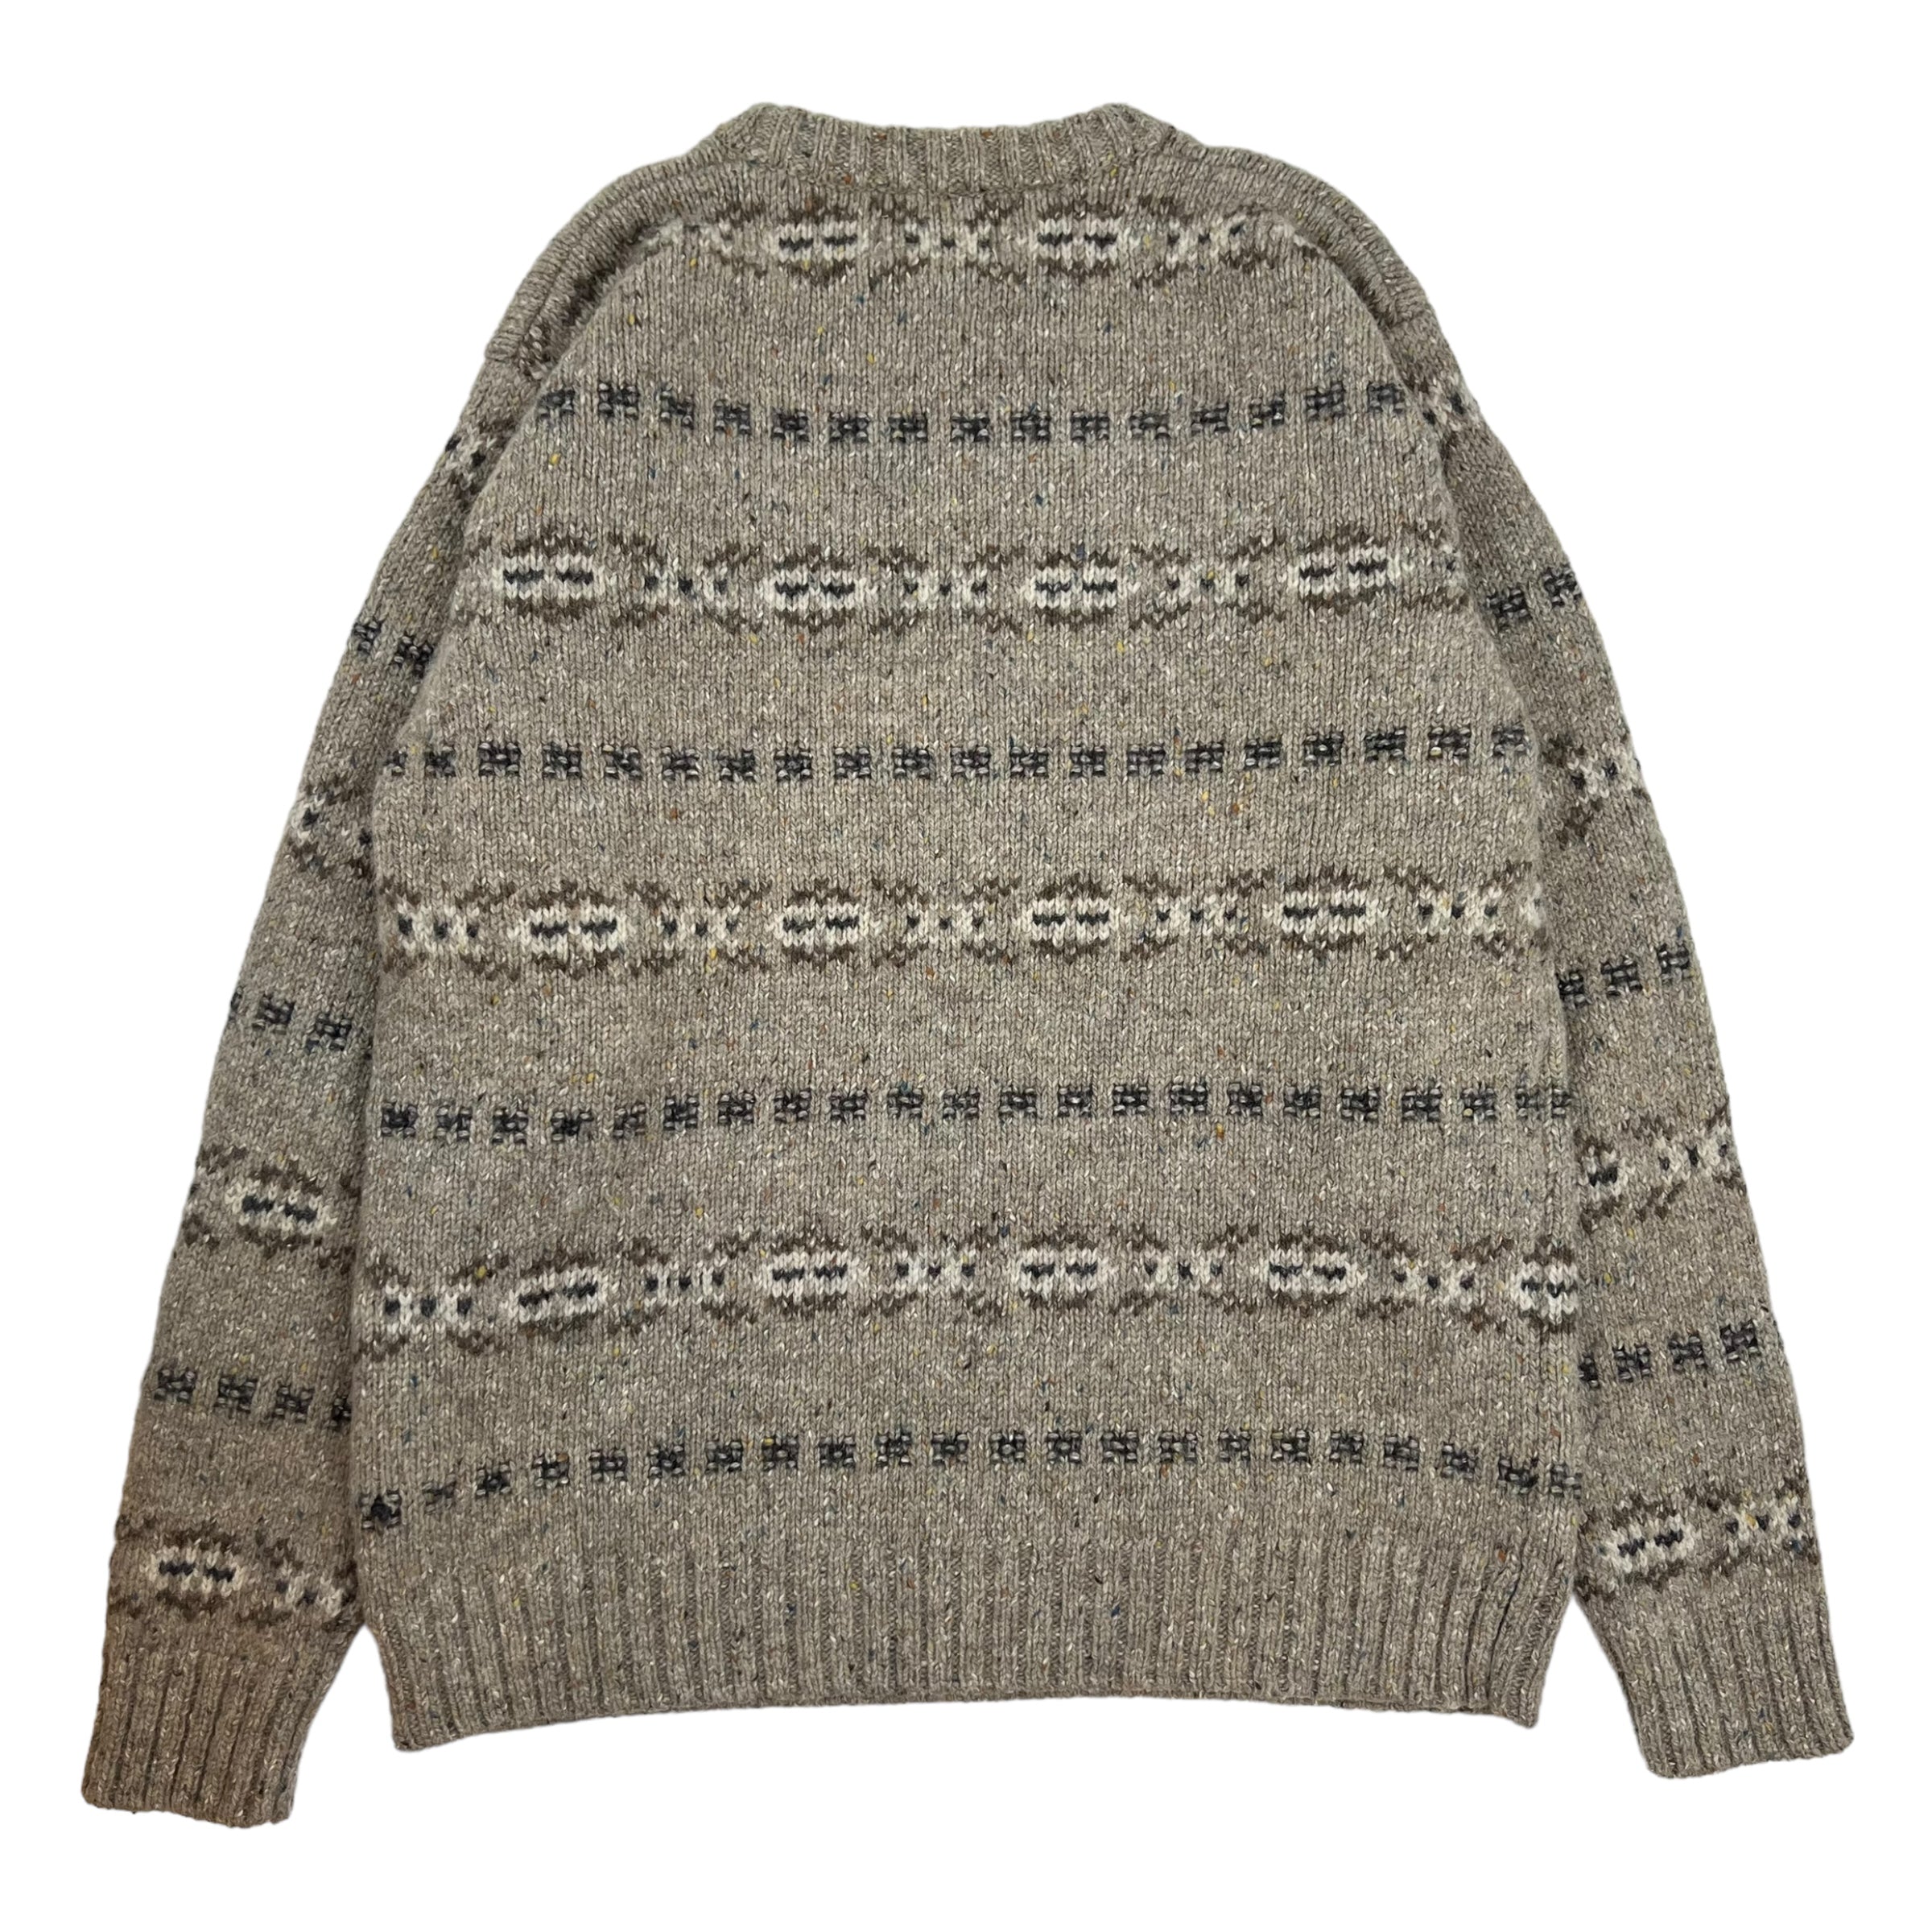 Vintage North Spirit Patterned Knit Sweater Beige